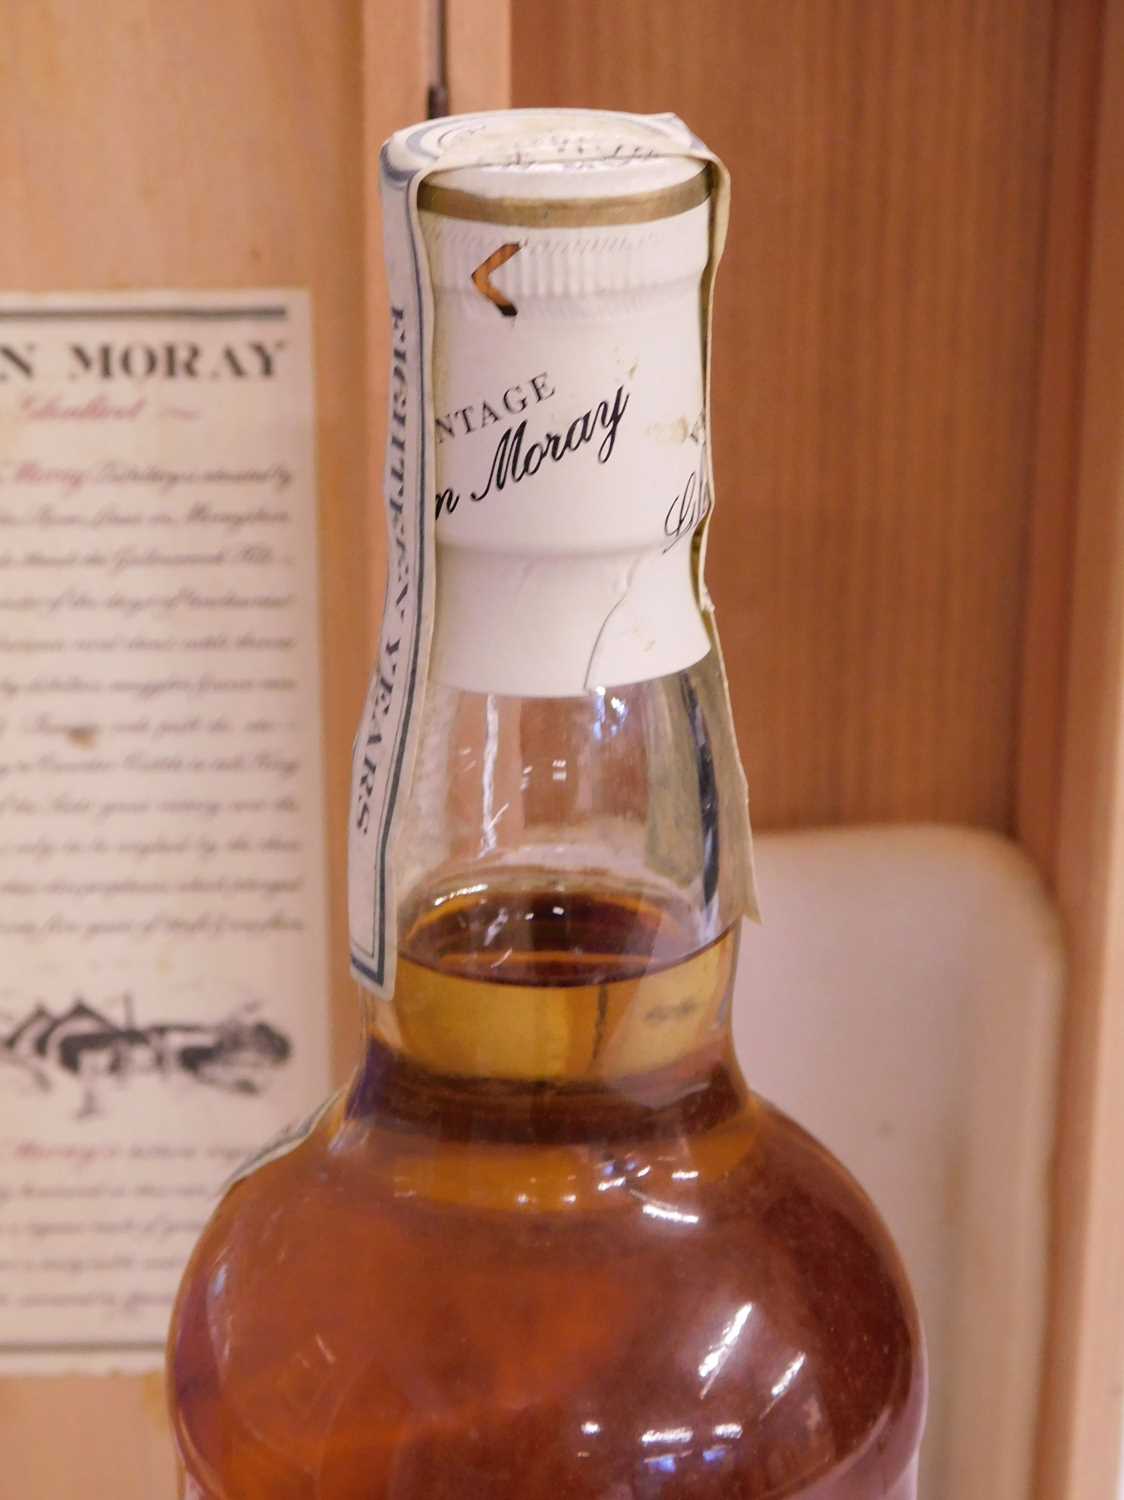 Glen Moray Glenlivet Vintage 1973 Aingle Highland Malt Whisky, 75cl, in original wooden presentation - Image 8 of 10